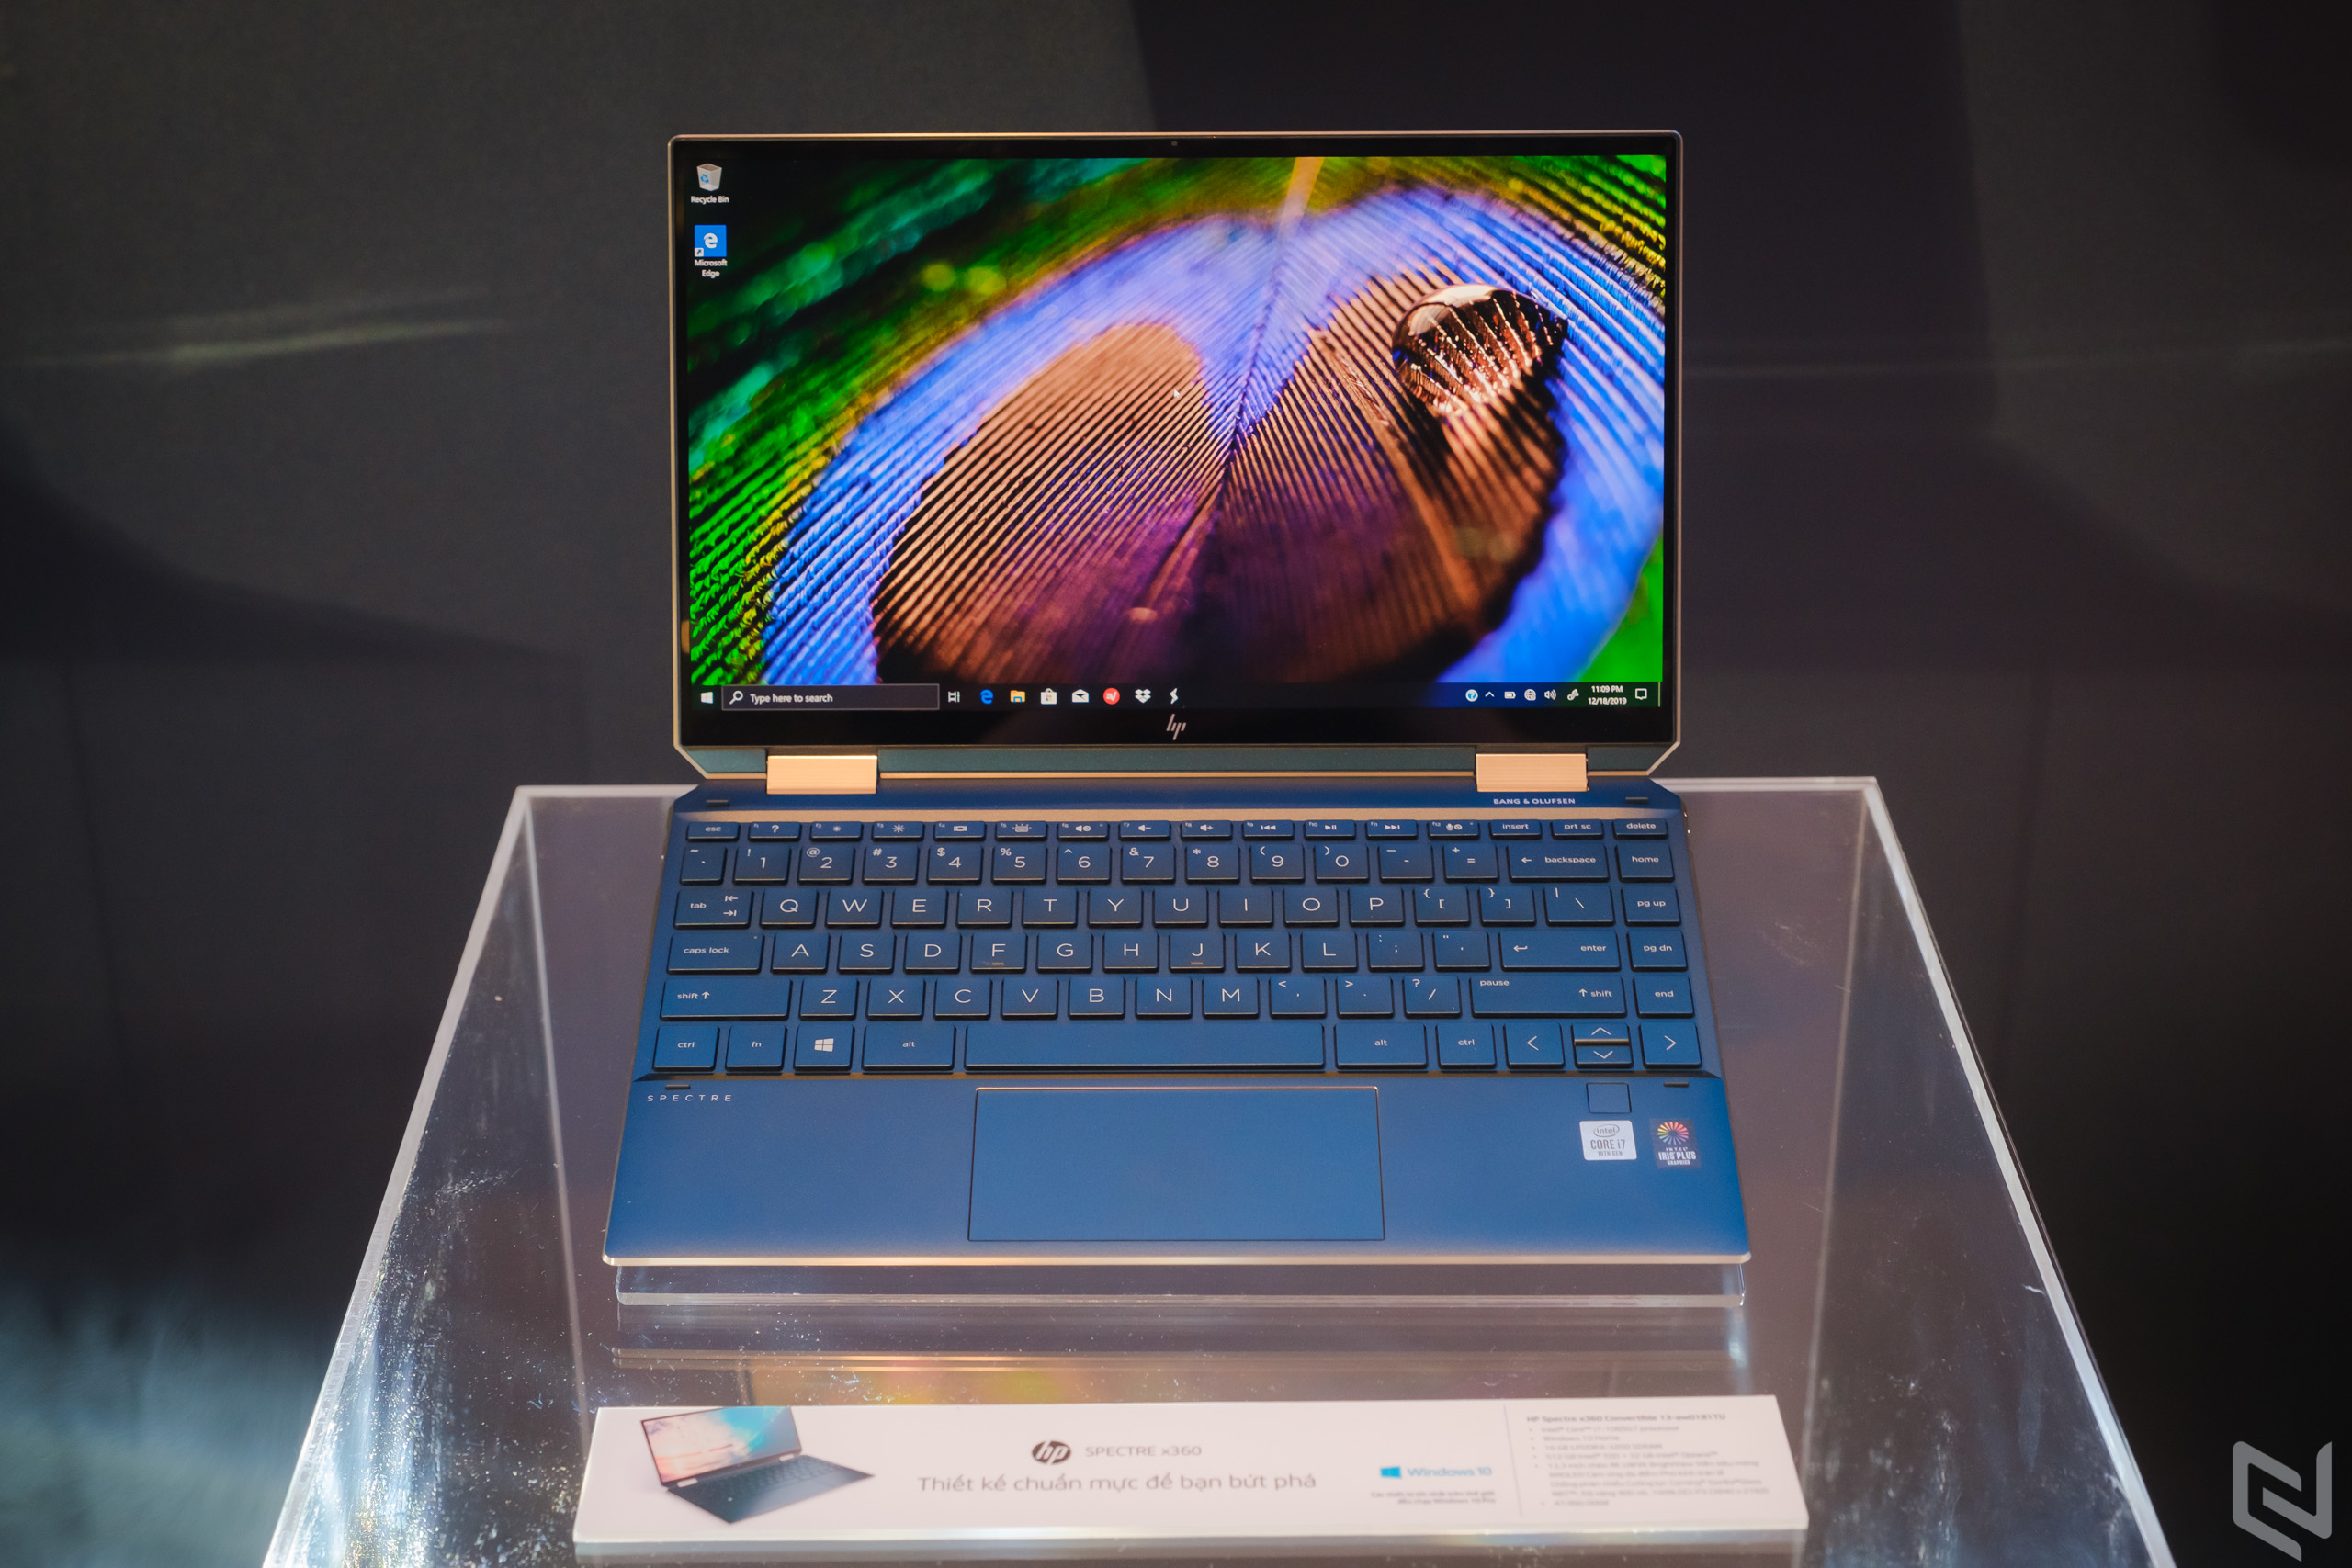 Tuần này có gì: Dell và HP trình làng loạt laptop chạy Intel core i thế hệ 10, lộ ảnh thực tế smartphone gập tiếp theo của Samsung